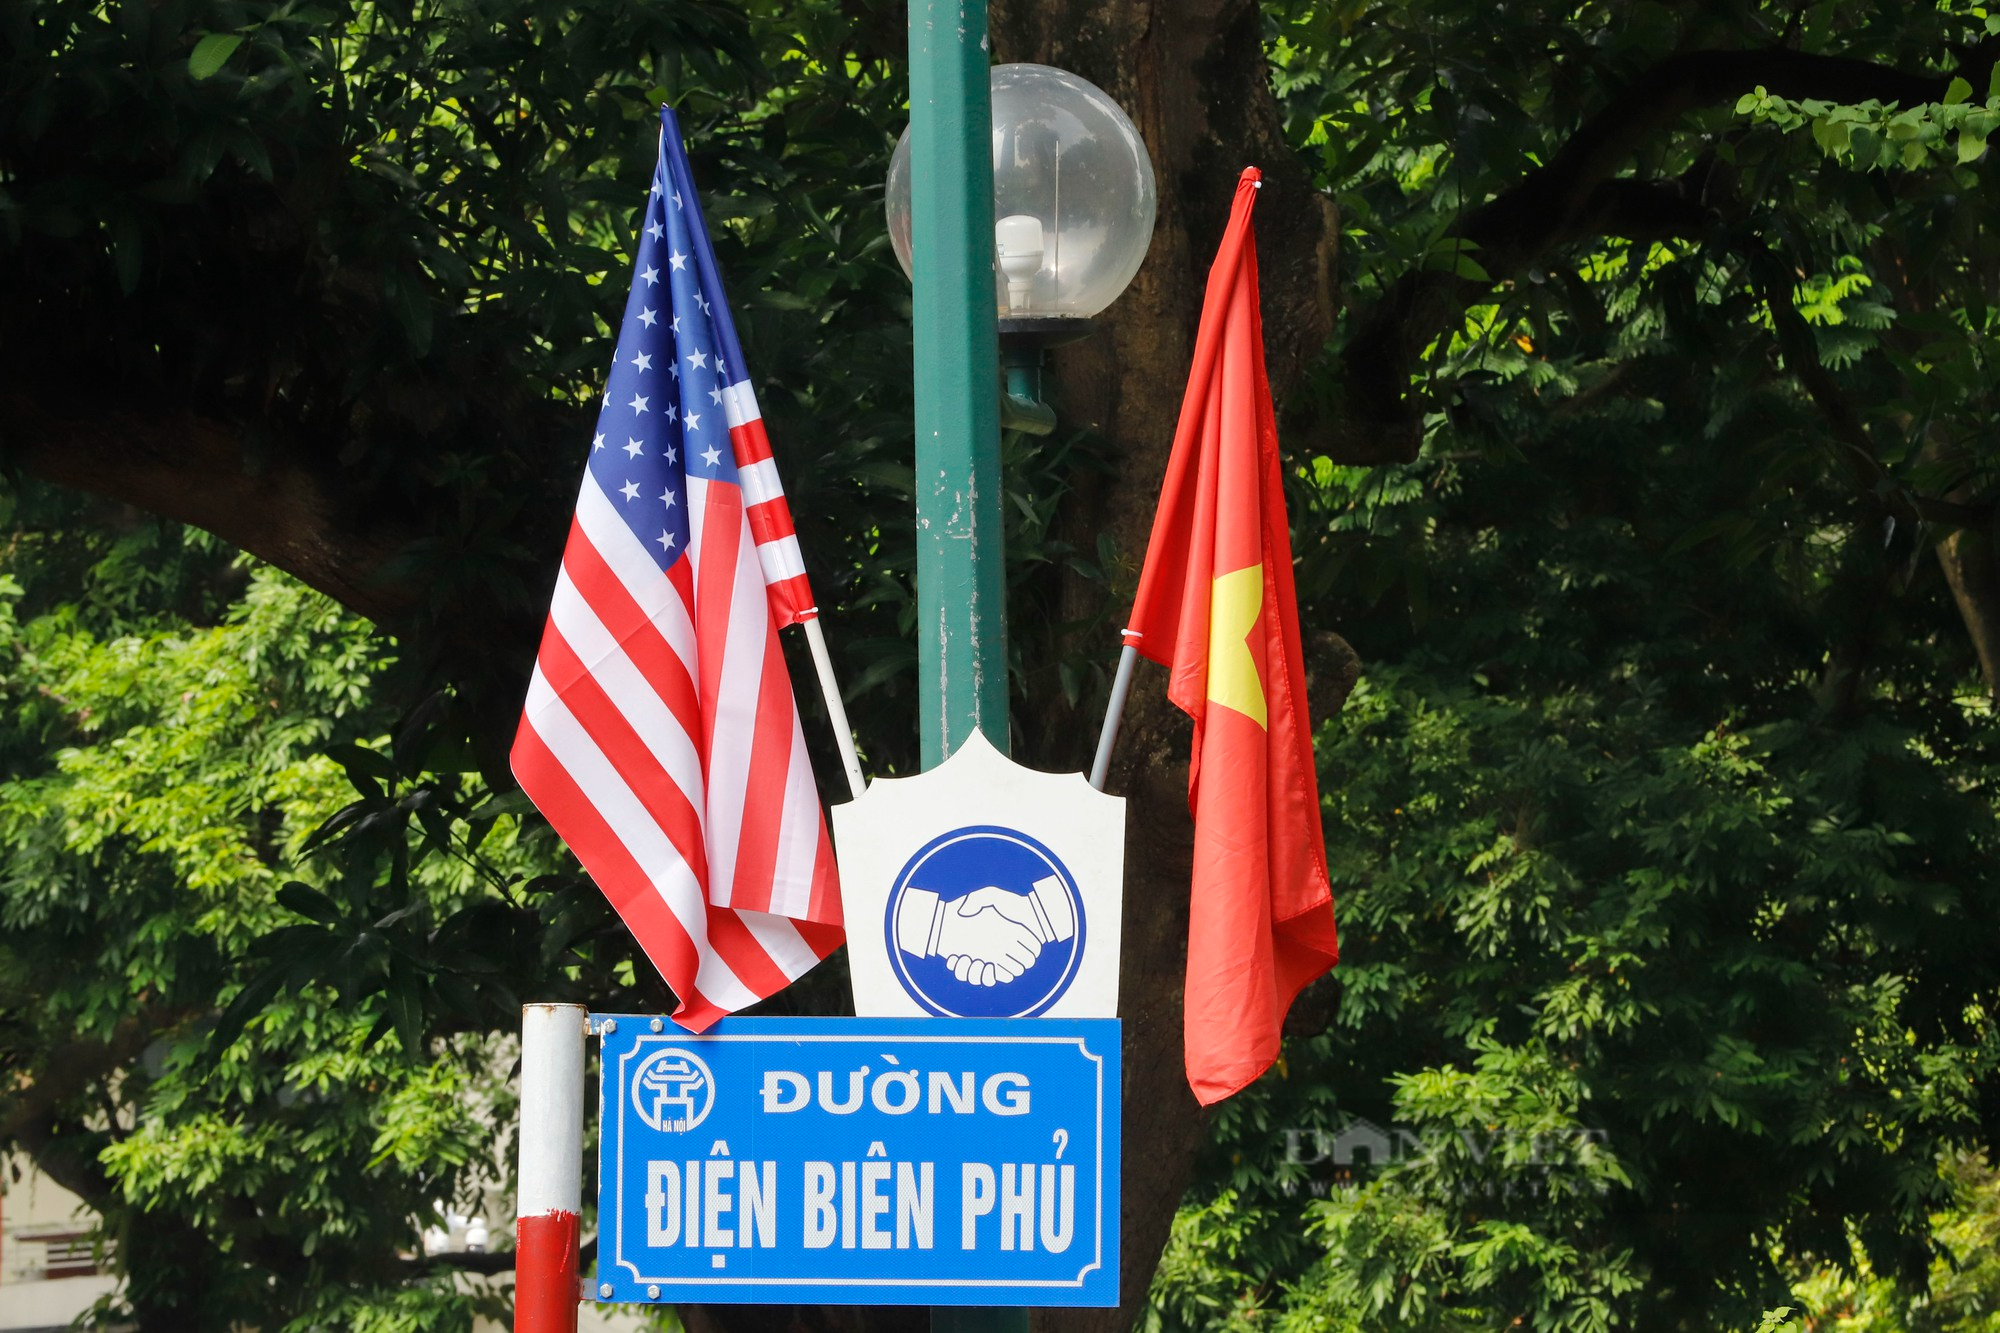 Quốc kỳ Việt Nam-Mỹ tung bay, rợp trời Thủ đô Hà Nội - Ảnh 2.